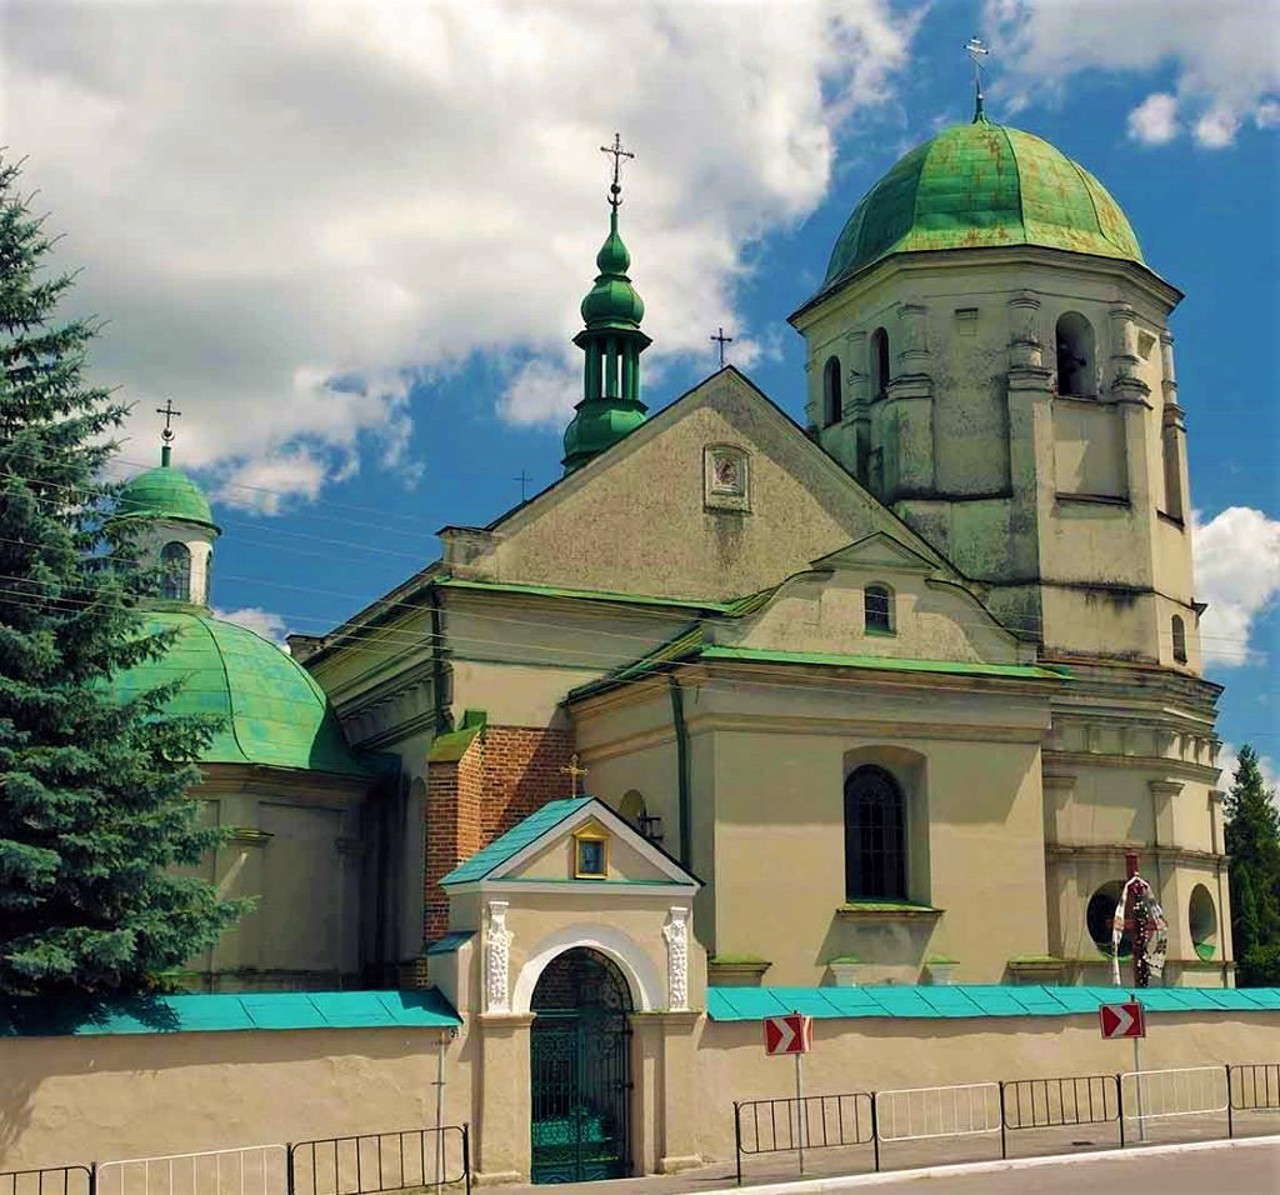 Holy Trinity Church, Olesko